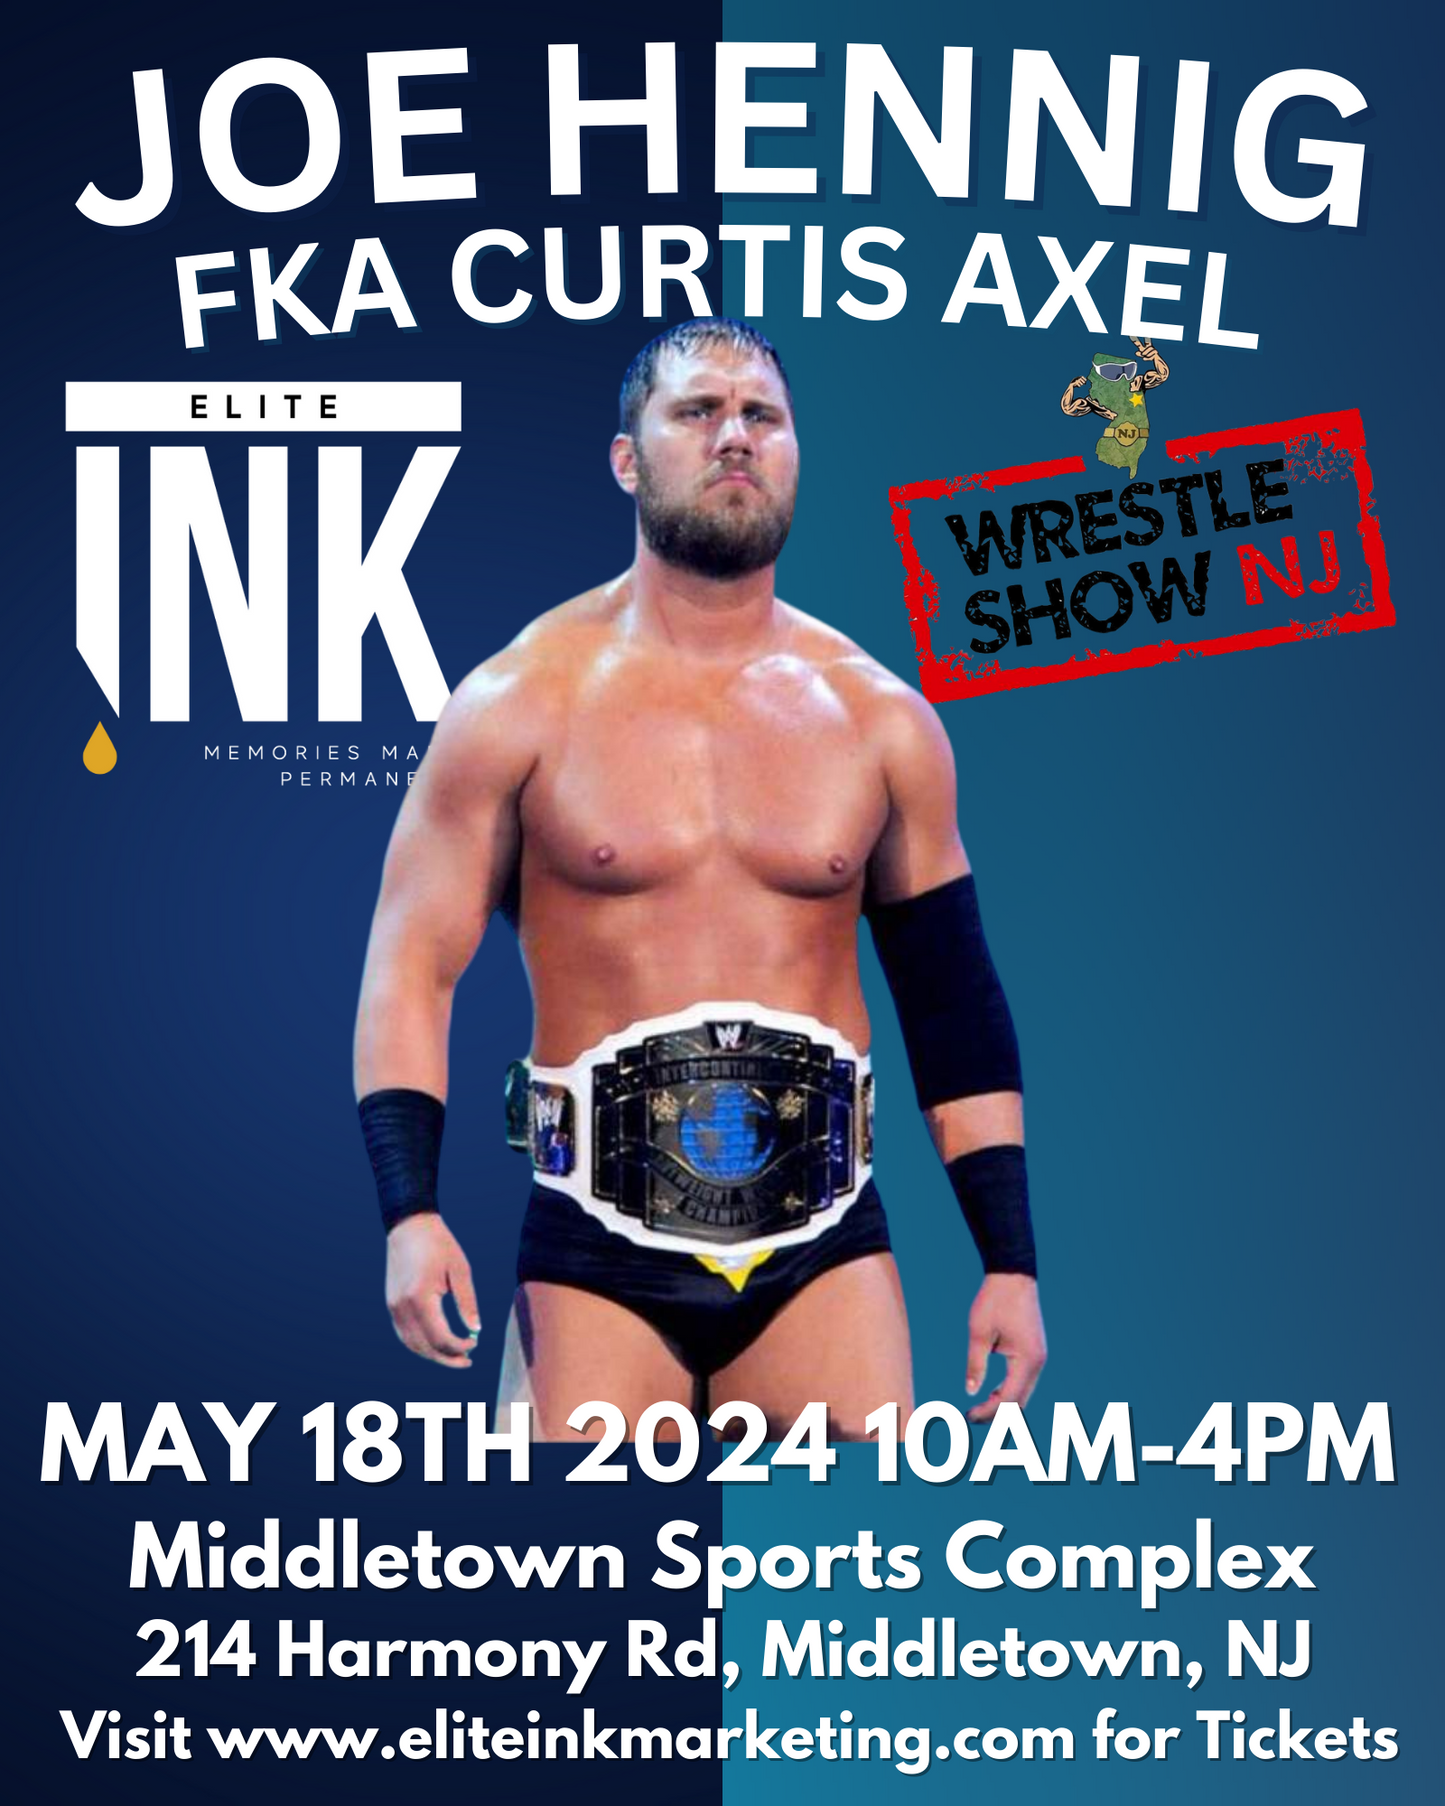 Joe Hennig FKA Curtis Axel Wrestle Show NJ Saturday May 18th Pre-Order